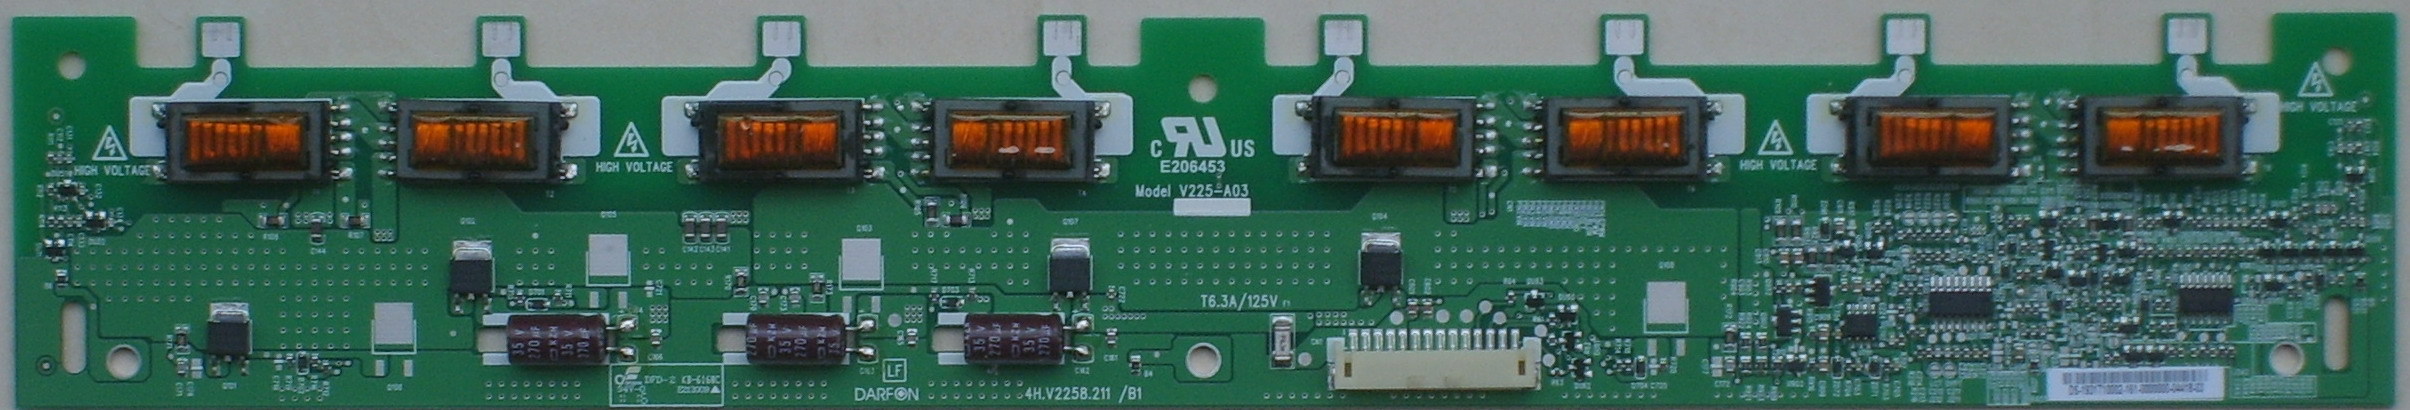 V225-A03 4H.V2258.211/B1 inverter board